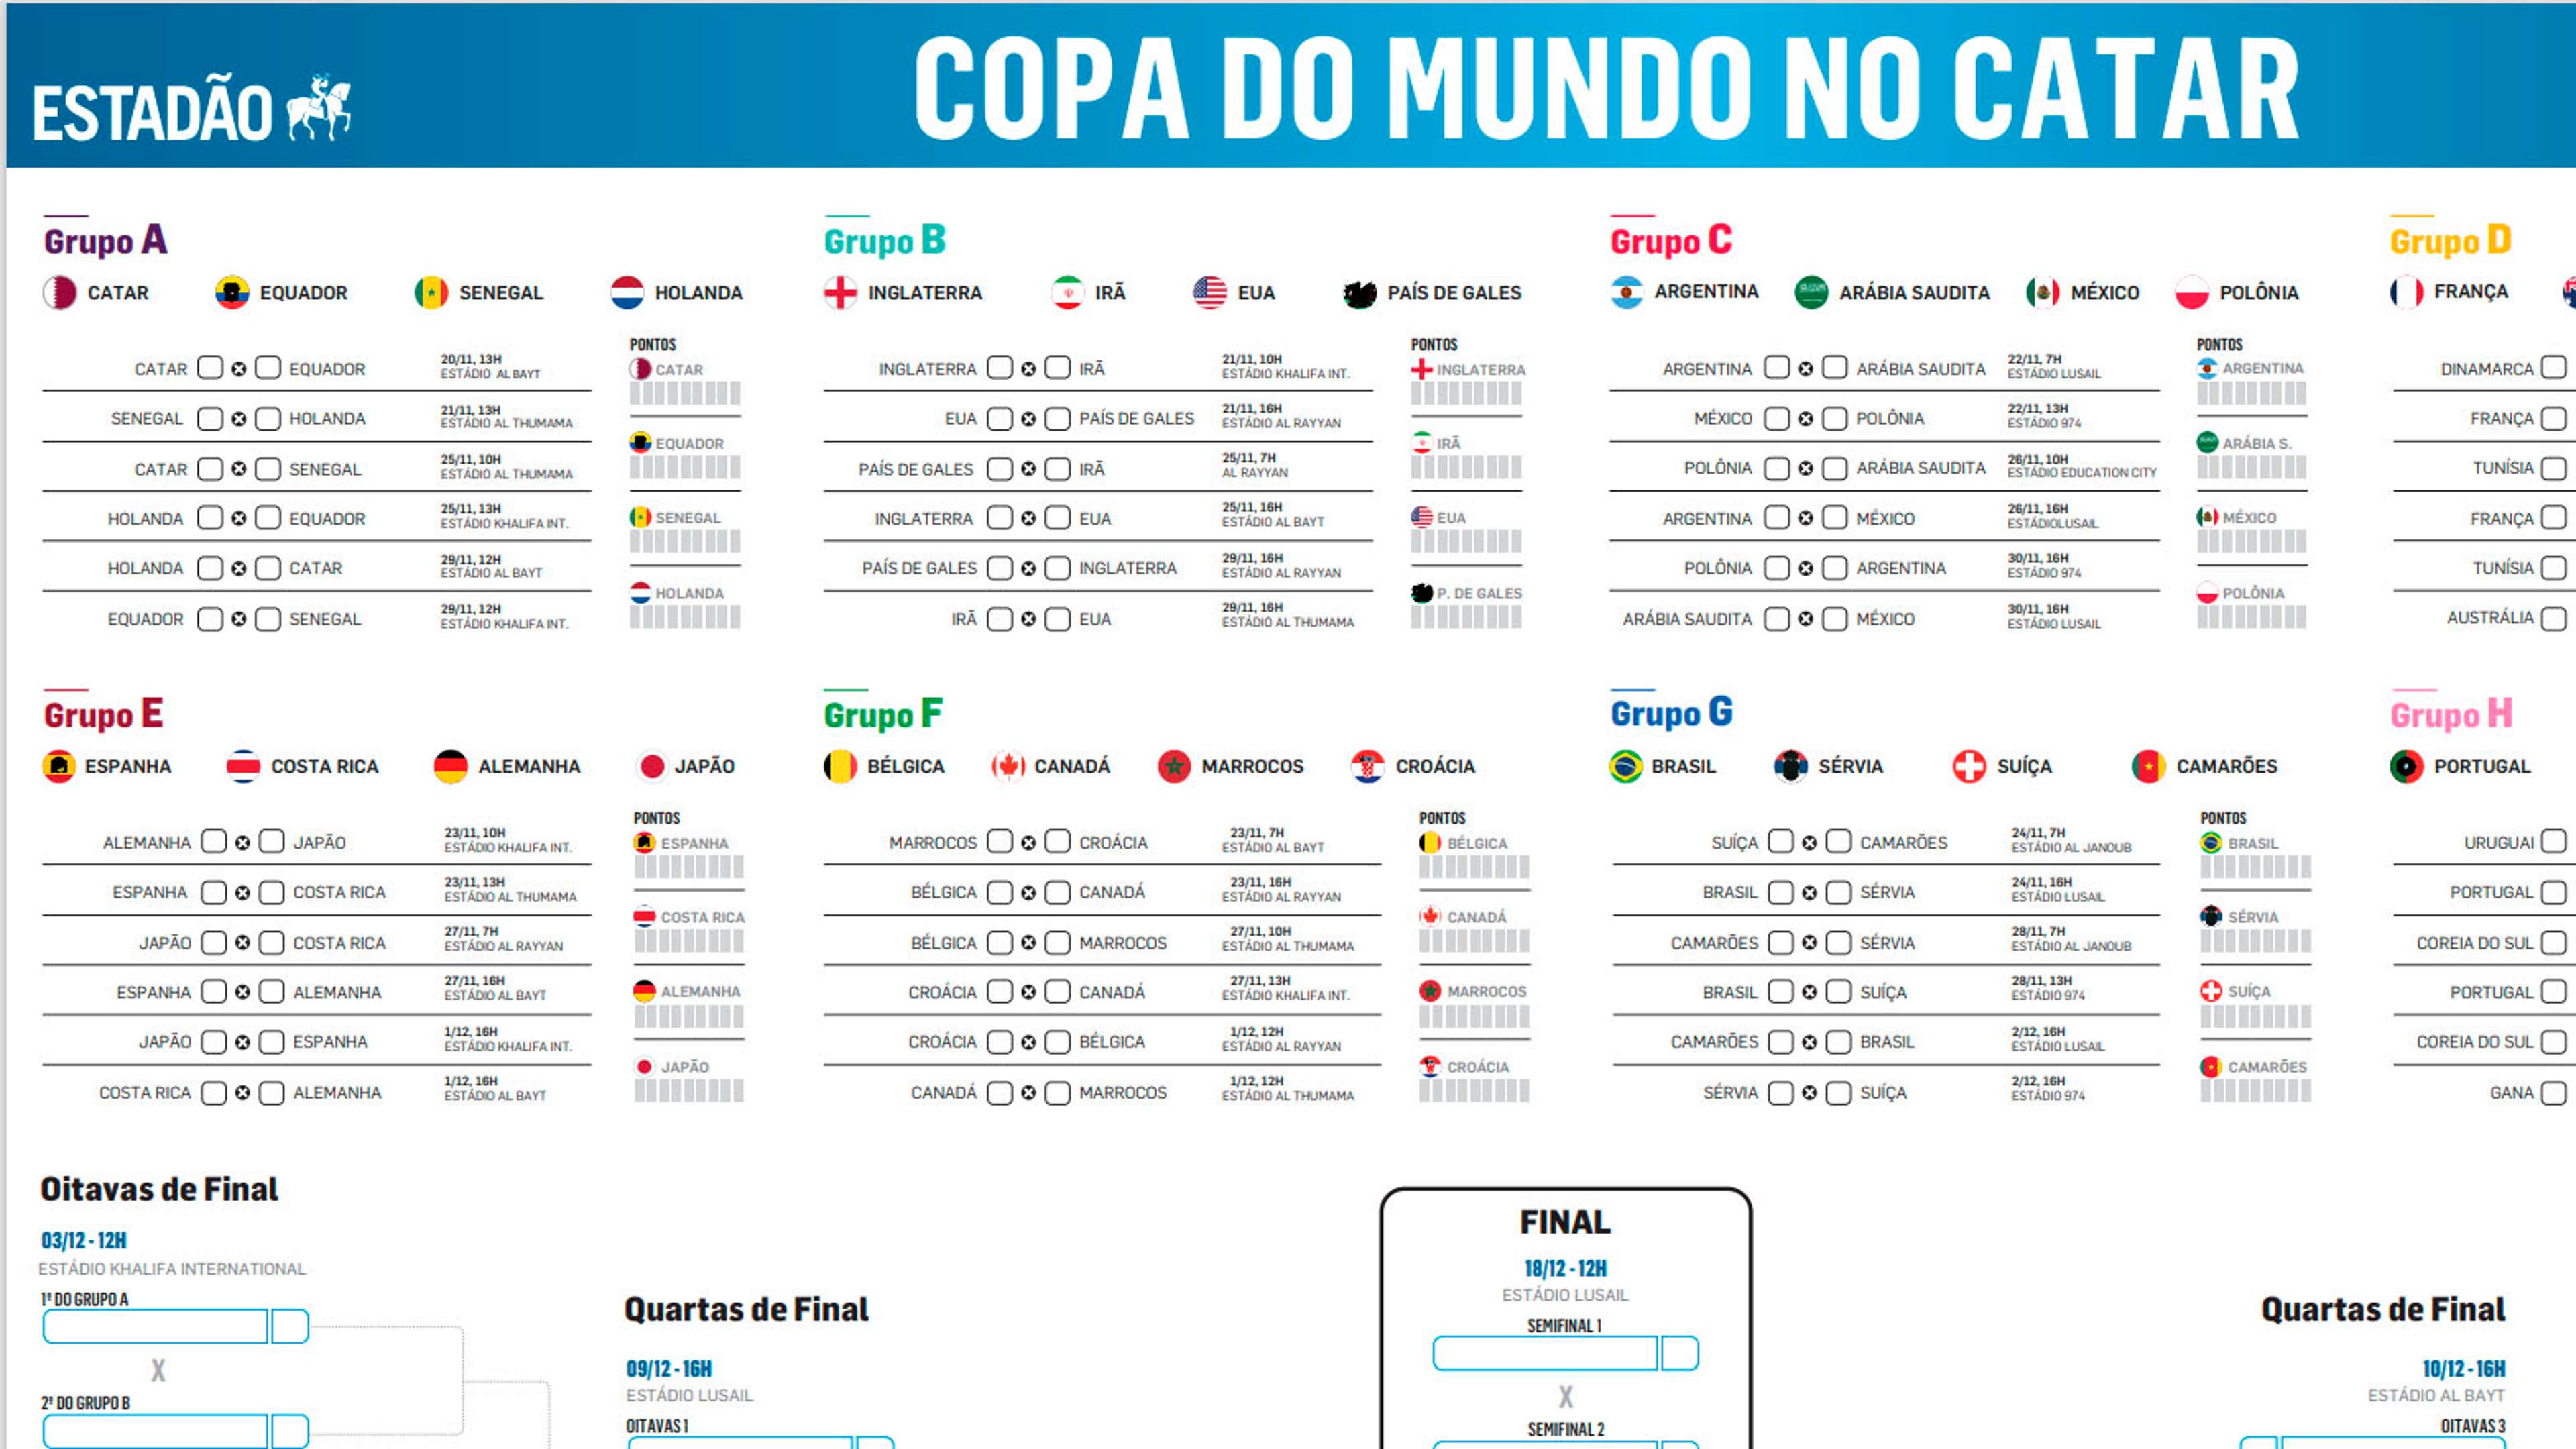 Tabela da Copa do Mundo 2022: veja todos os jogos até a final - Jornal O  Globo